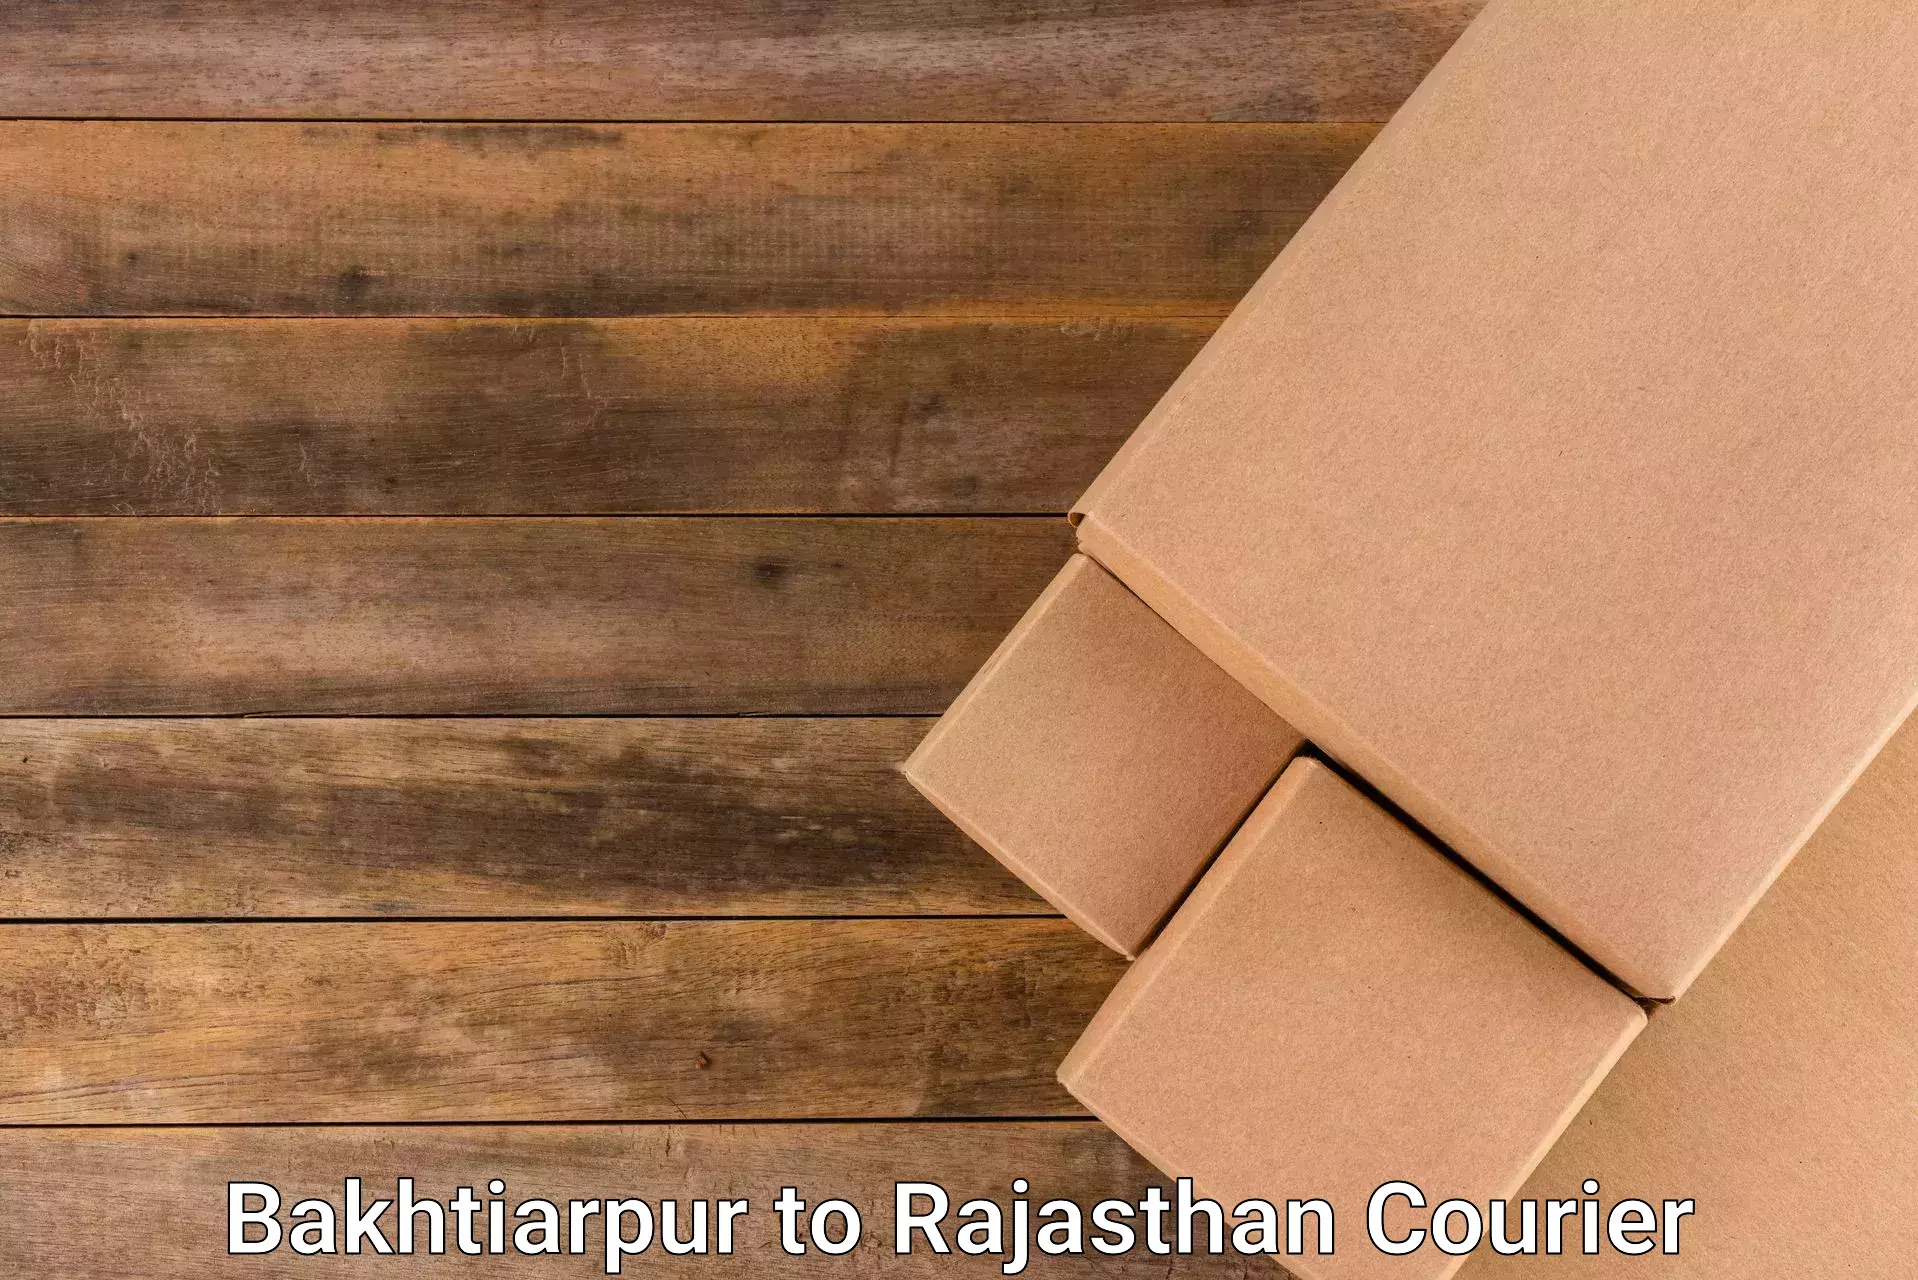 Customer-centric shipping Bakhtiarpur to Rajsamand